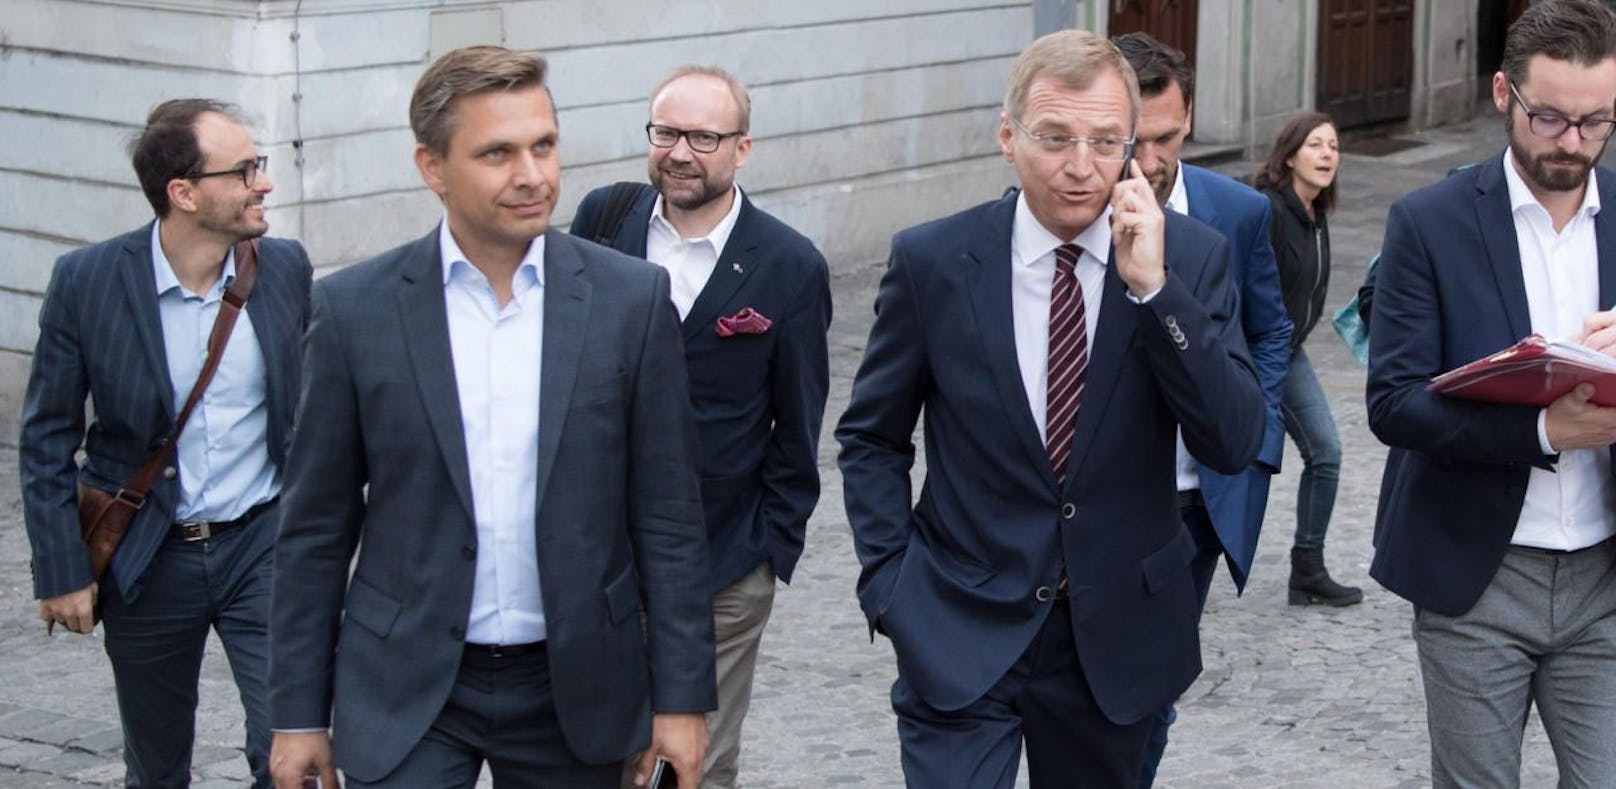 Parteimanager Wolfgang Hattmannsdorfer und LH Thomas Stelzer bei der Nationalratswahl 2017.